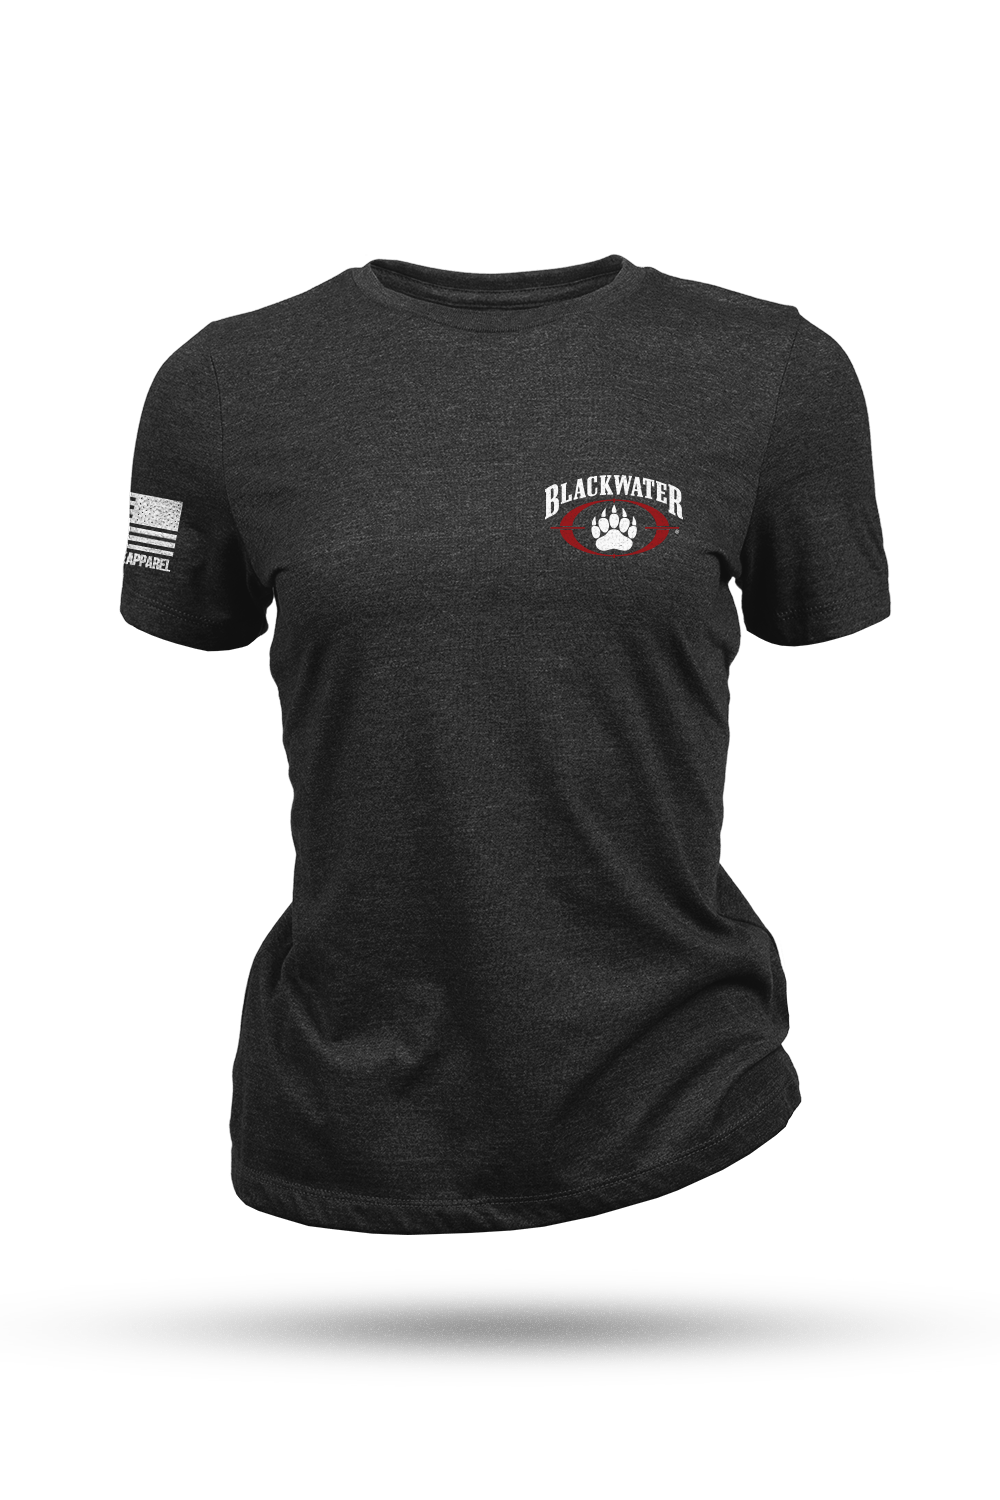 Women's T-Shirt - Blackwater Alumni Association (Hidden)